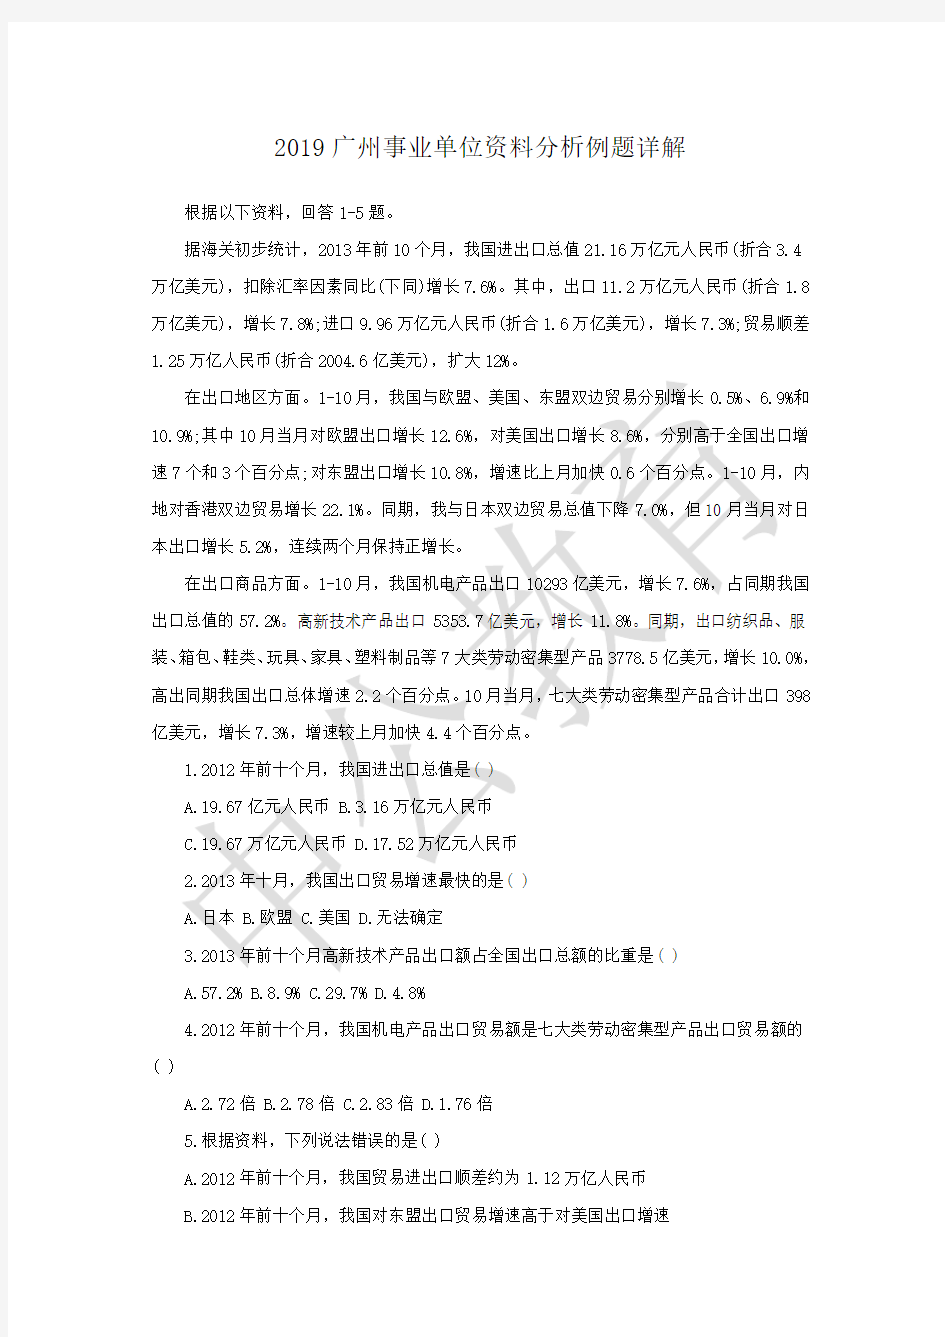 2019广州事业单位资料分析例题详解